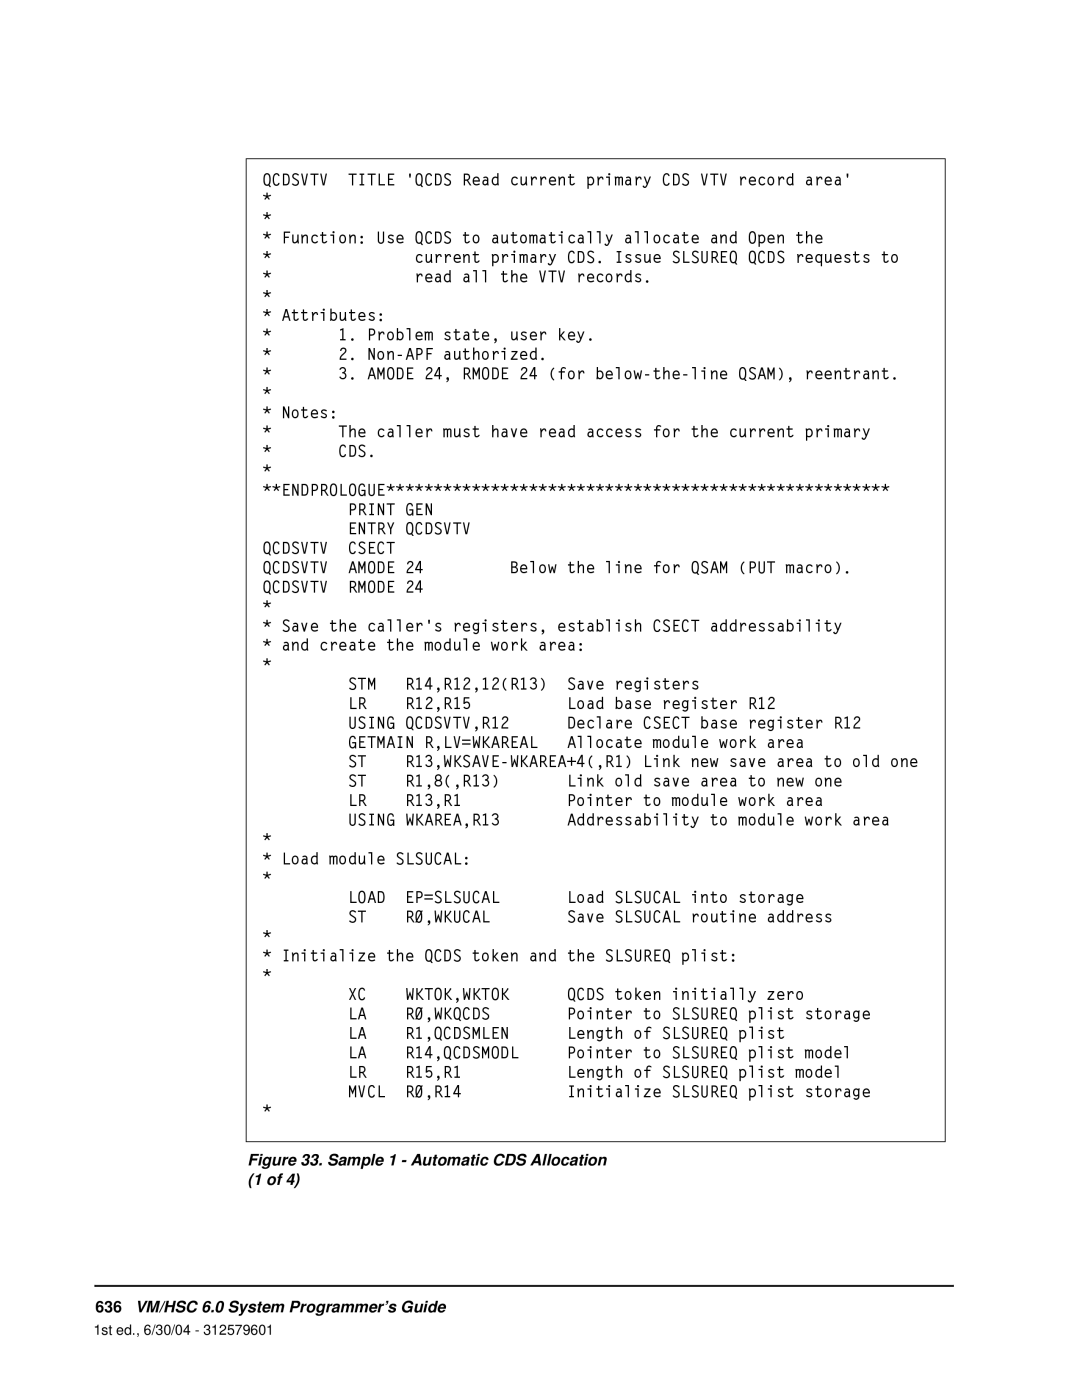 StorageTek manual 636VM/HSC 6.0 System Programmer’s Guide 